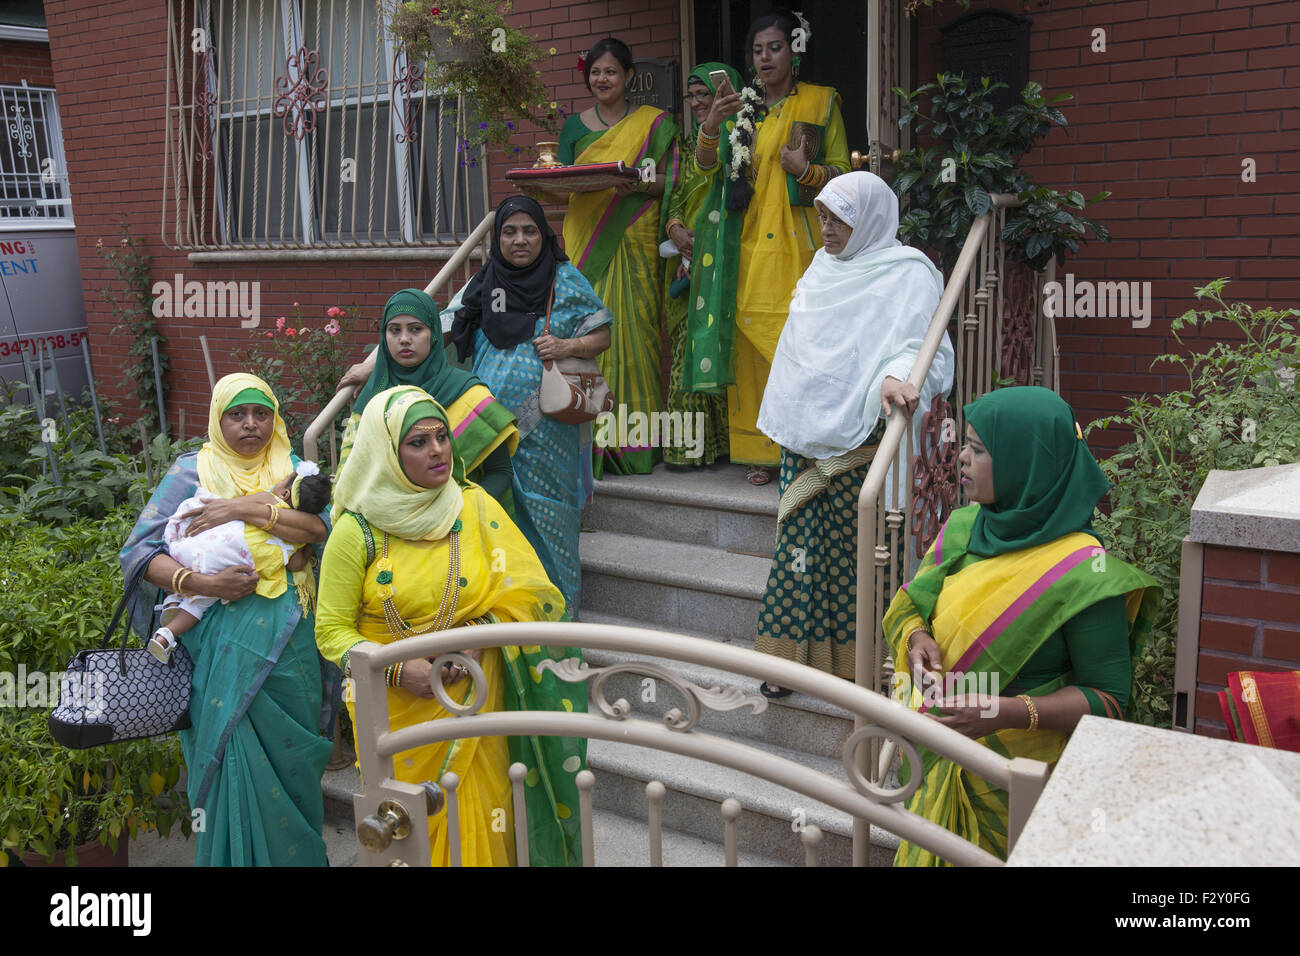 La famille du marié musulman bangladais quitte la maison pour sa réception de mariage dans la région de Brooklyn, New York. Banque D'Images